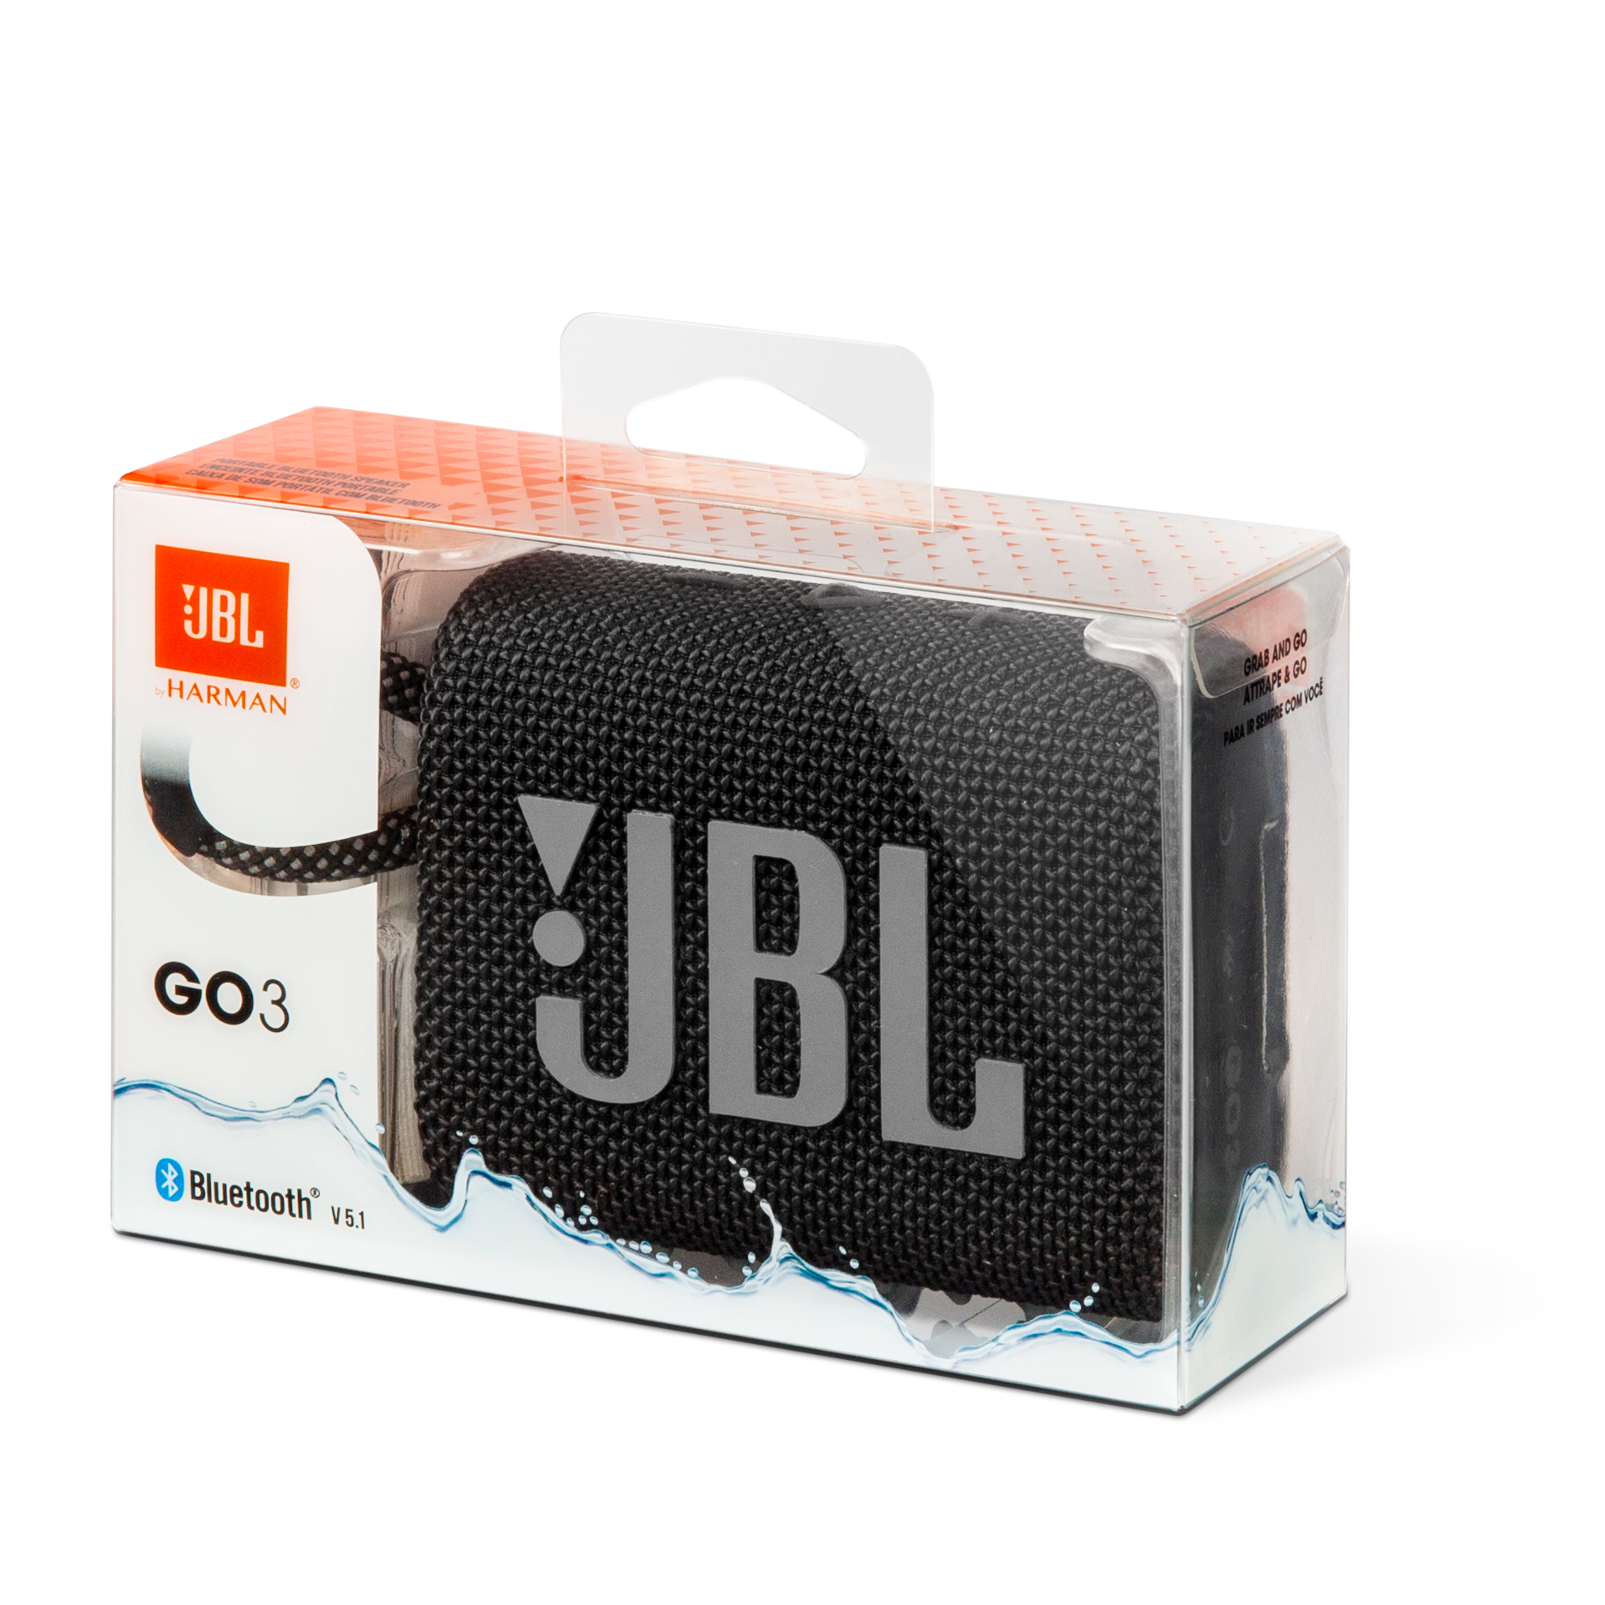 JBL GO 3 fake v JBL GO 3 original. ¡¡¡ponte las pilas!!! 🔋🔋 